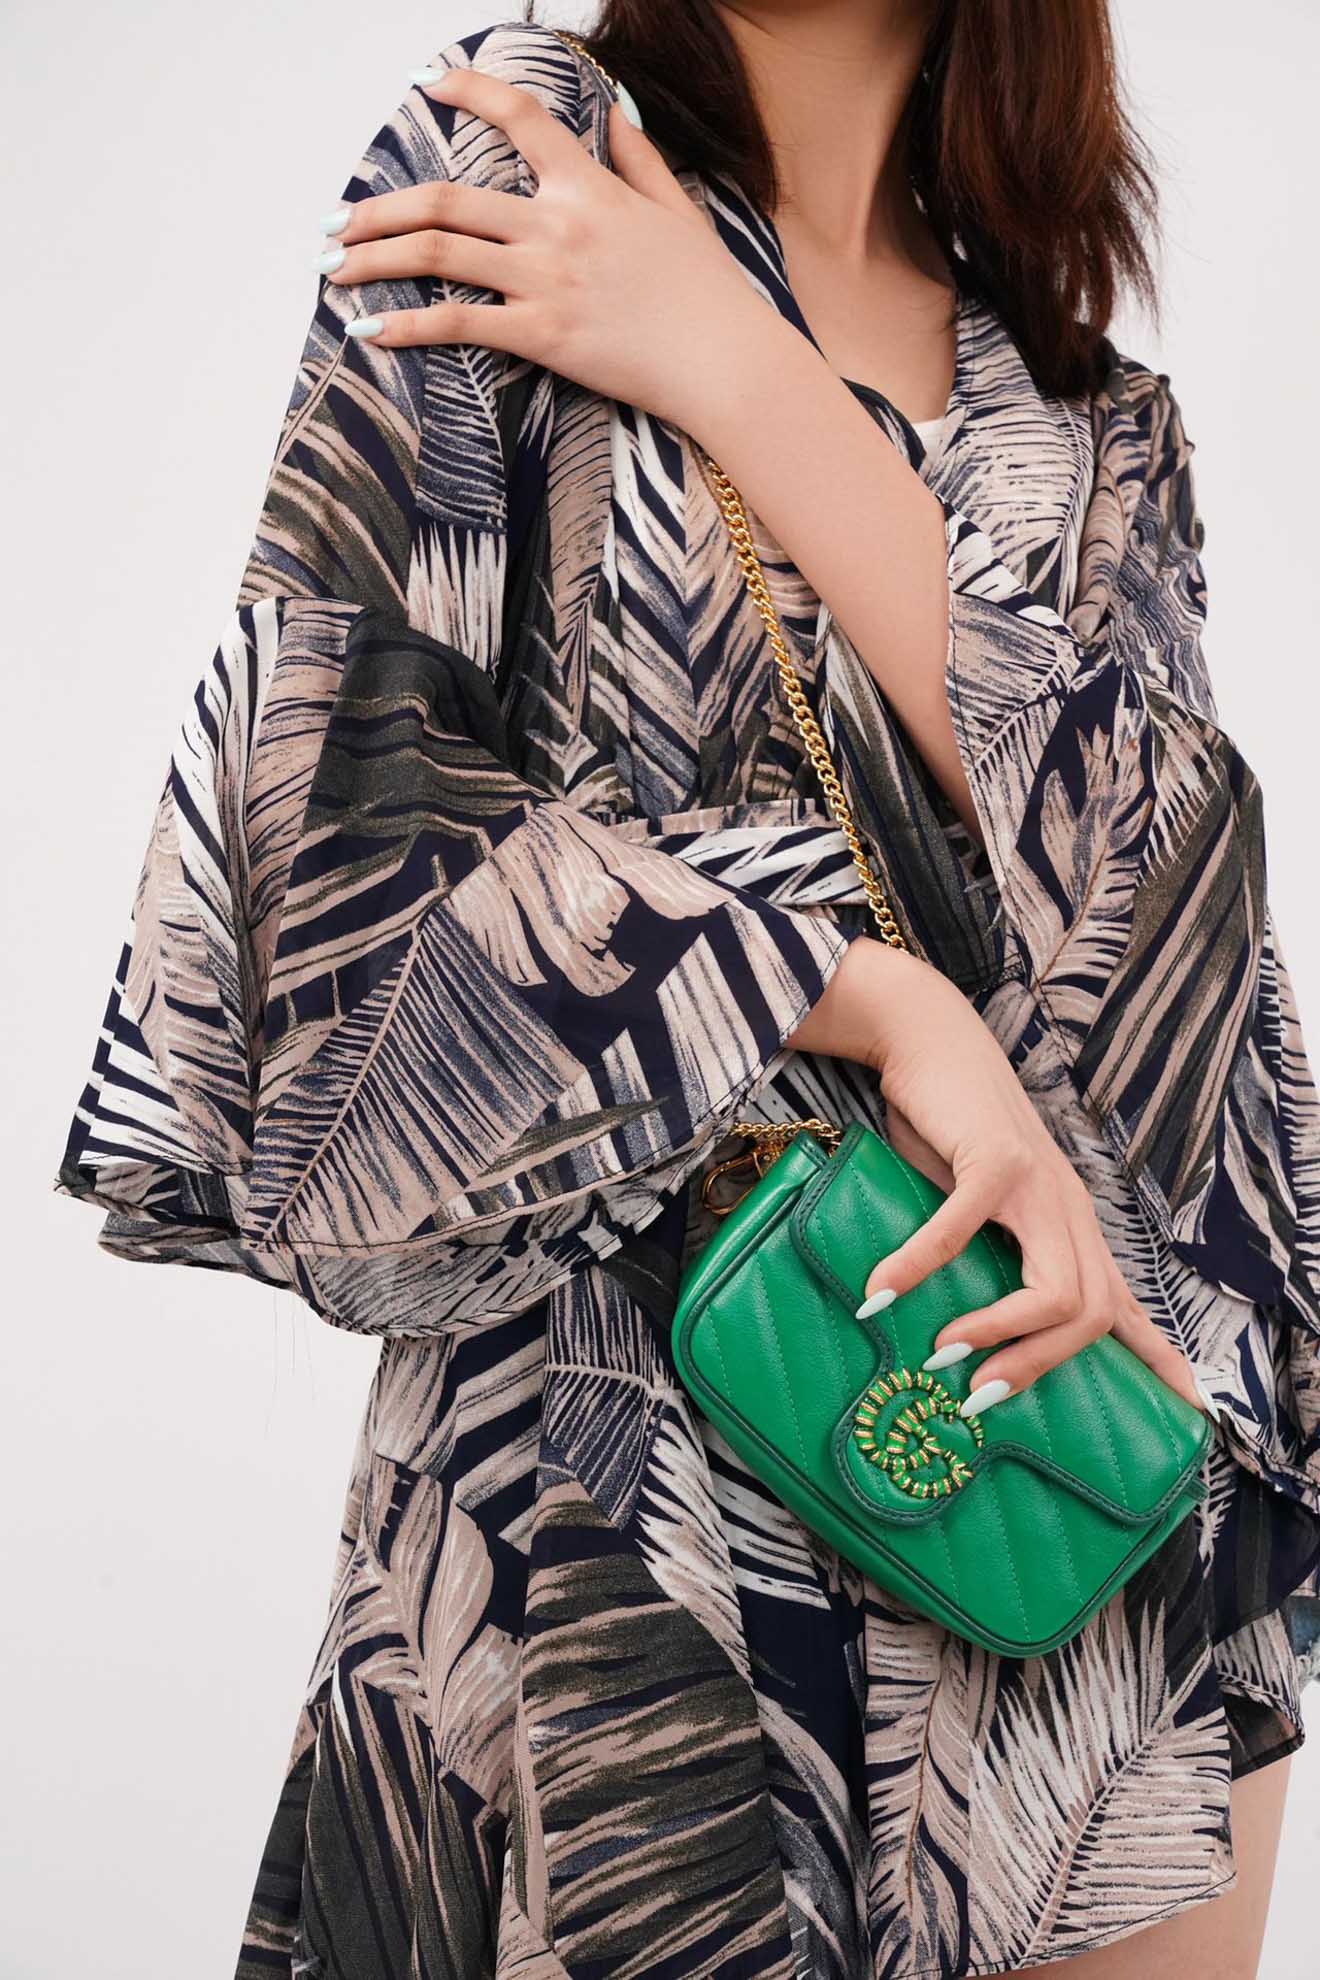 Túi Gucci Marmont Super Mini Bag in Green